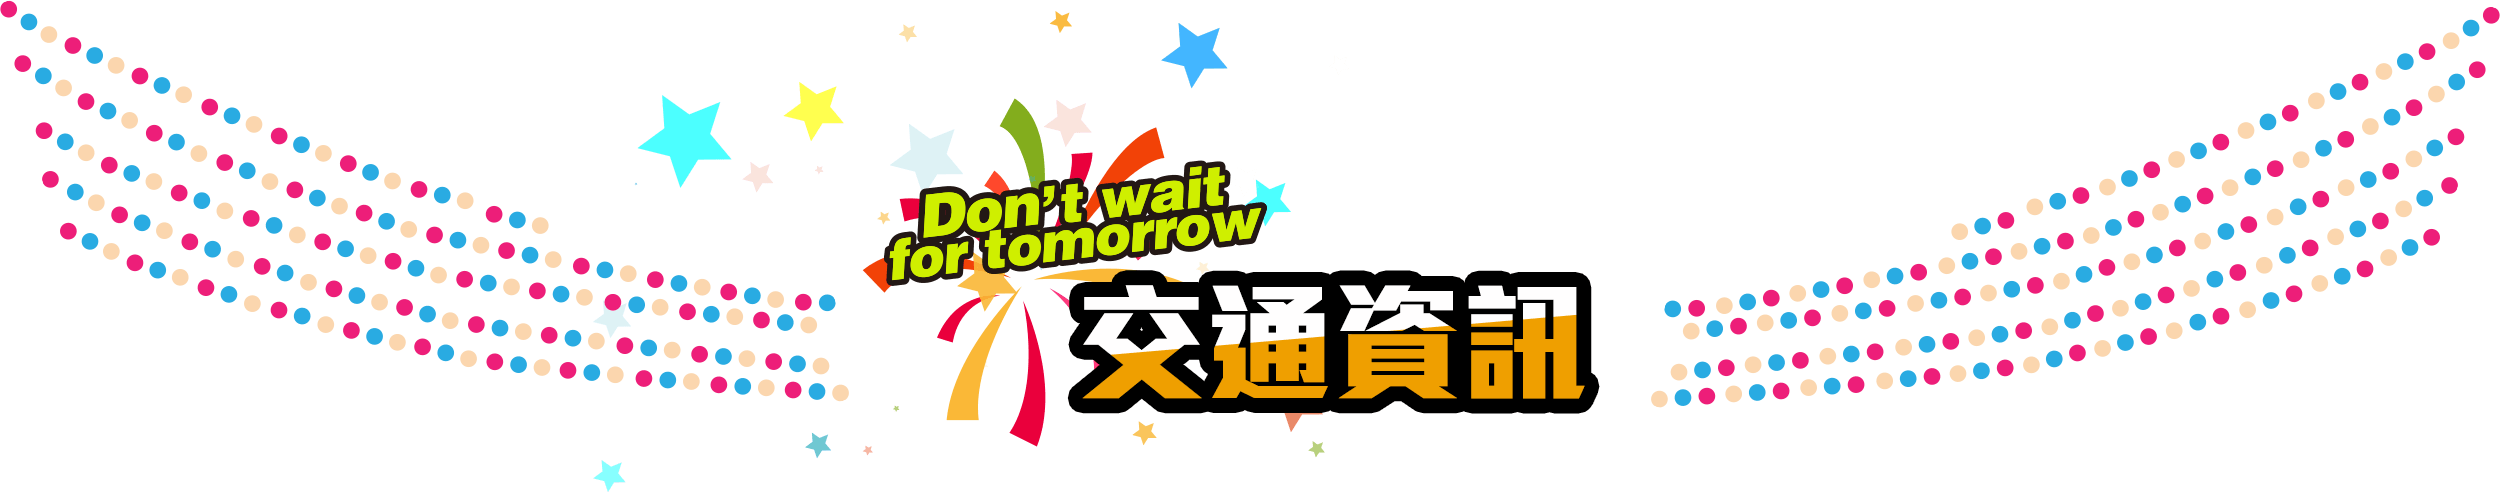 2017日本留學展-Don’t wait for tomorrow 擁抱夢想/勇往直前/勇敢追夢，想，就去做